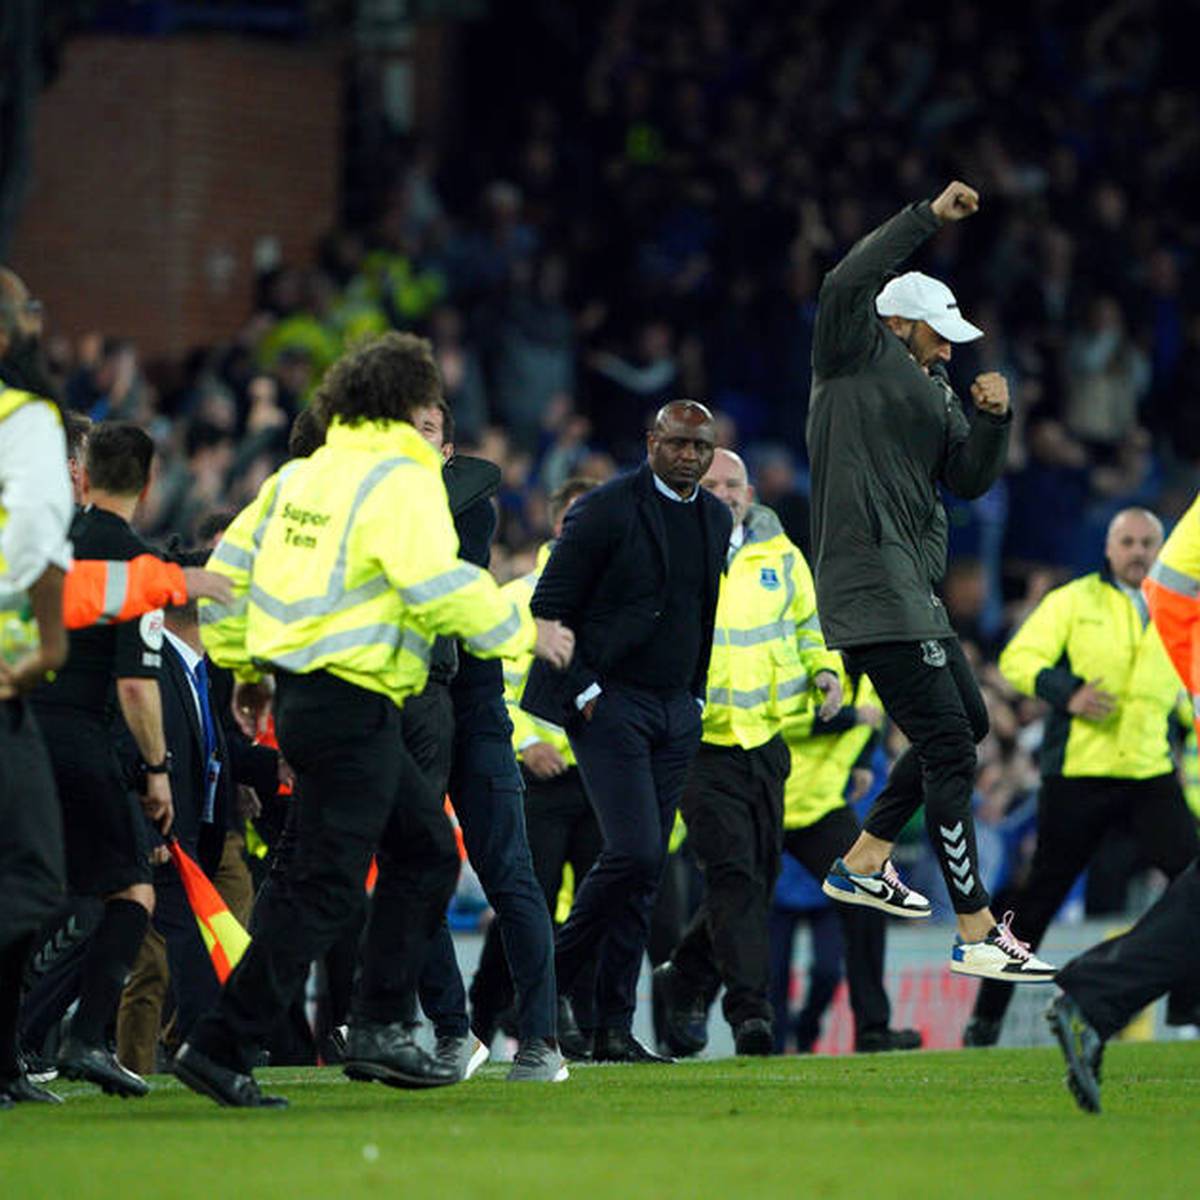 Patrick Vieira wird nach der Niederlage mit Crystal Palace von einem Everton-Fan provoziert. Inmitten eines Platzsturmes kommt es daraufhin zu einer Handgreiflichkeiten. 